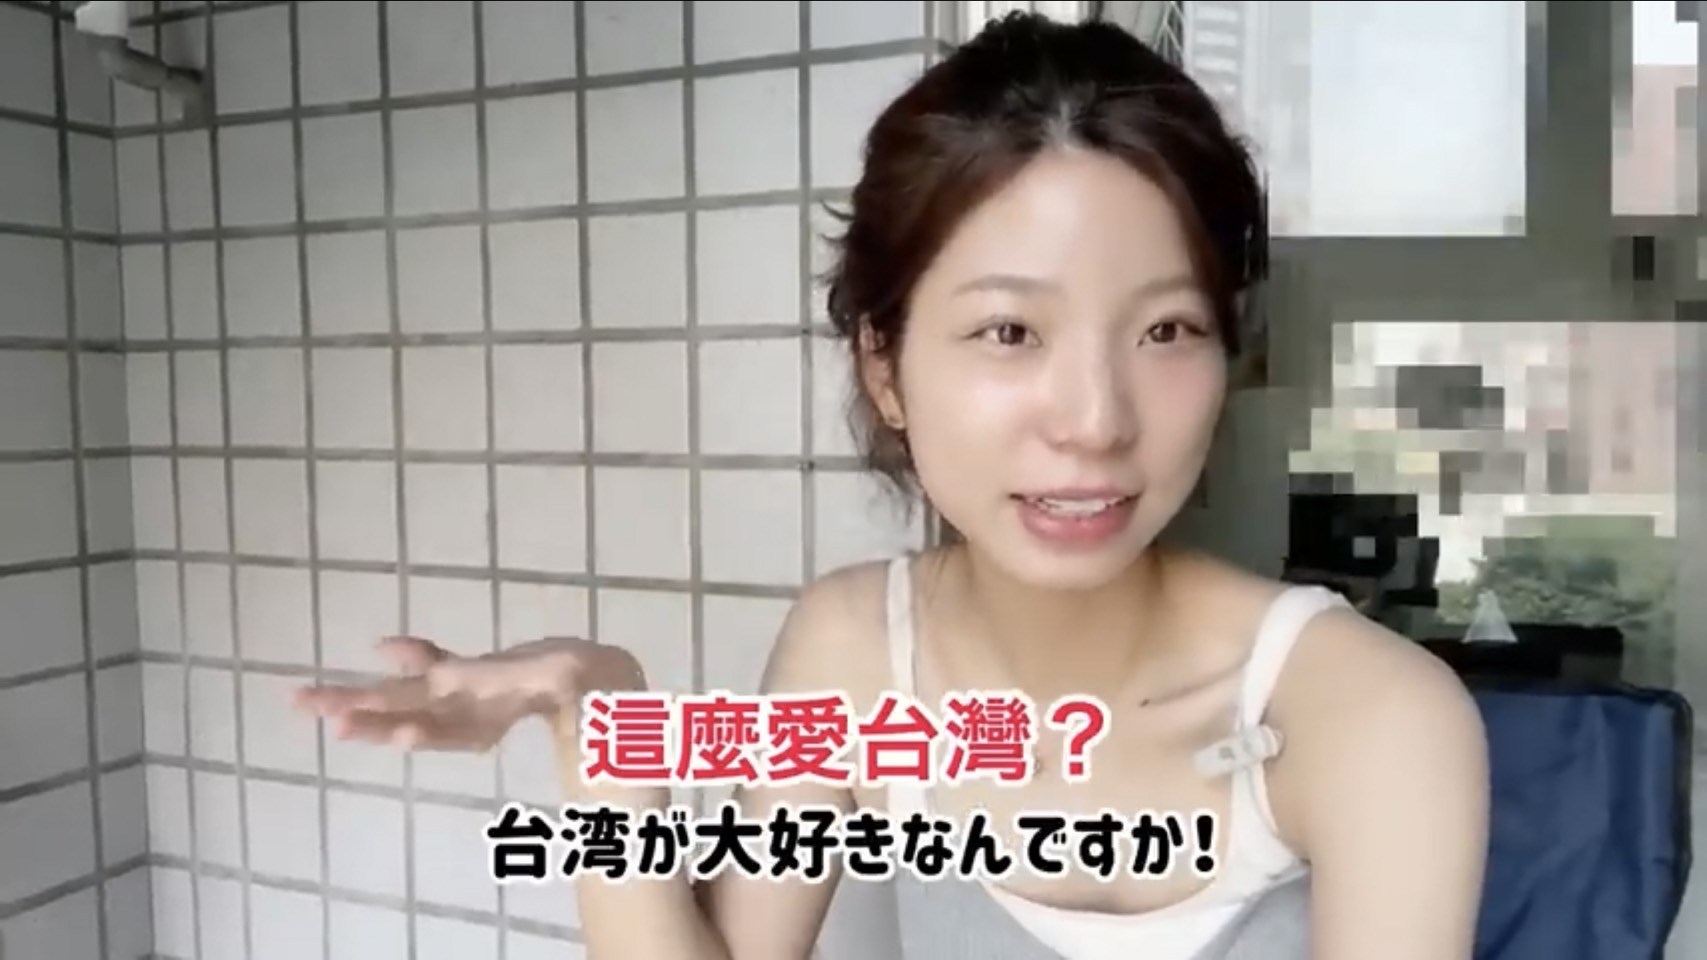 Nana berbagi mengapa dia mencintai Taiwan dalam video tersebut.  (Sumber foto : 日本人娜娜)